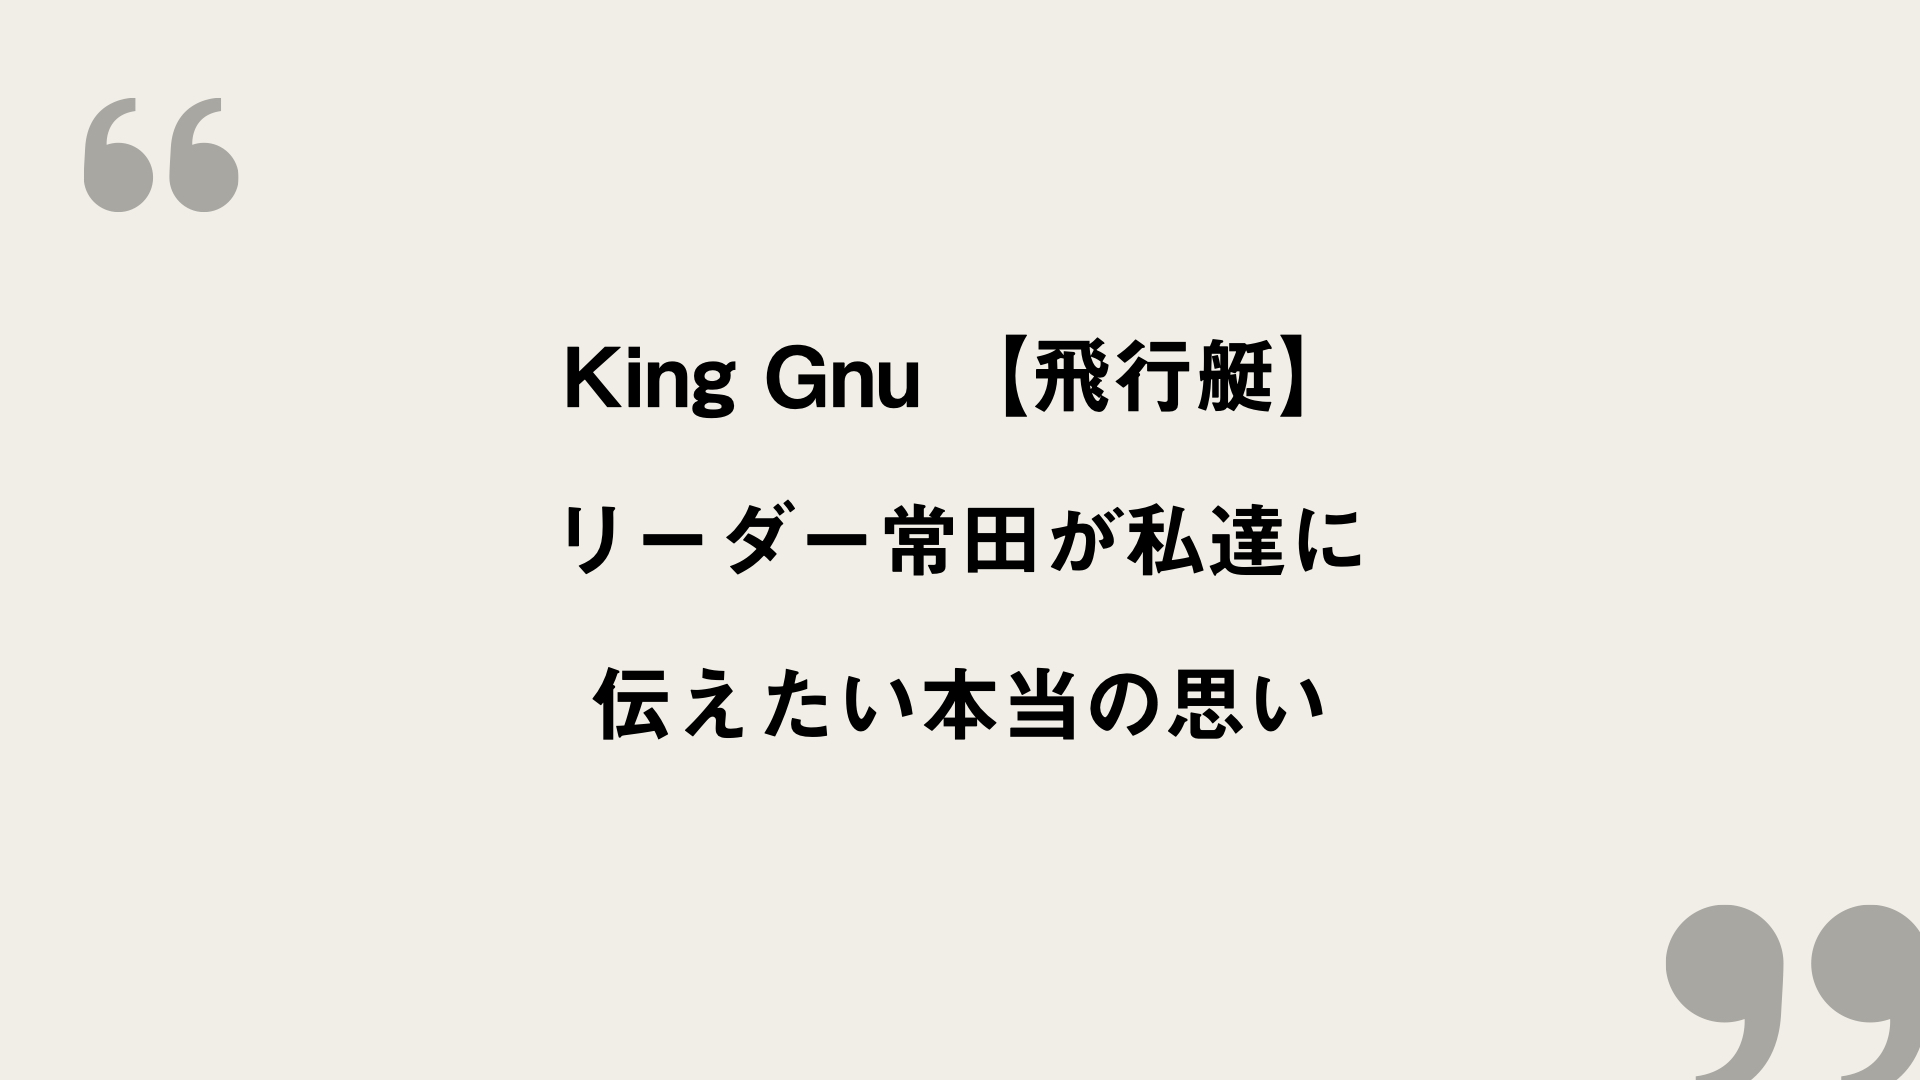 飛行 艇 king gnu 歌詞